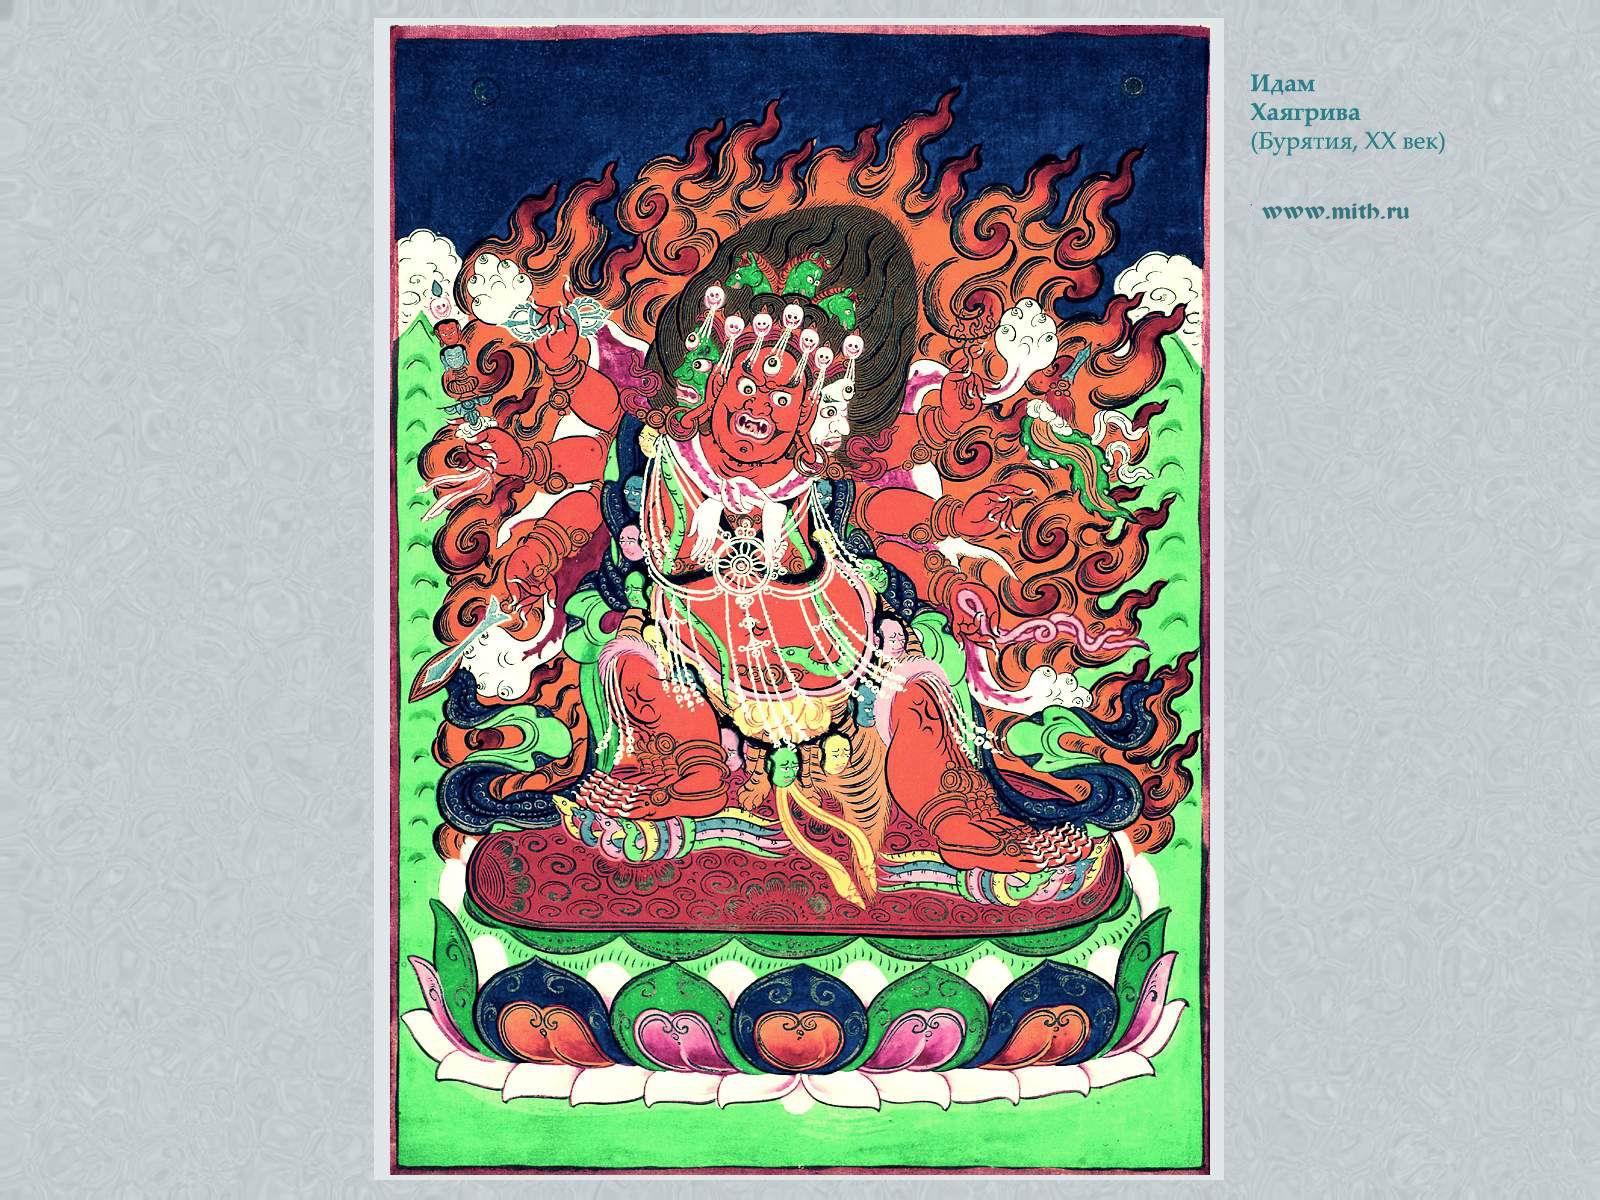 Гухьясадхана Хаягрива

перейти к книге 'Тибетская живопись'